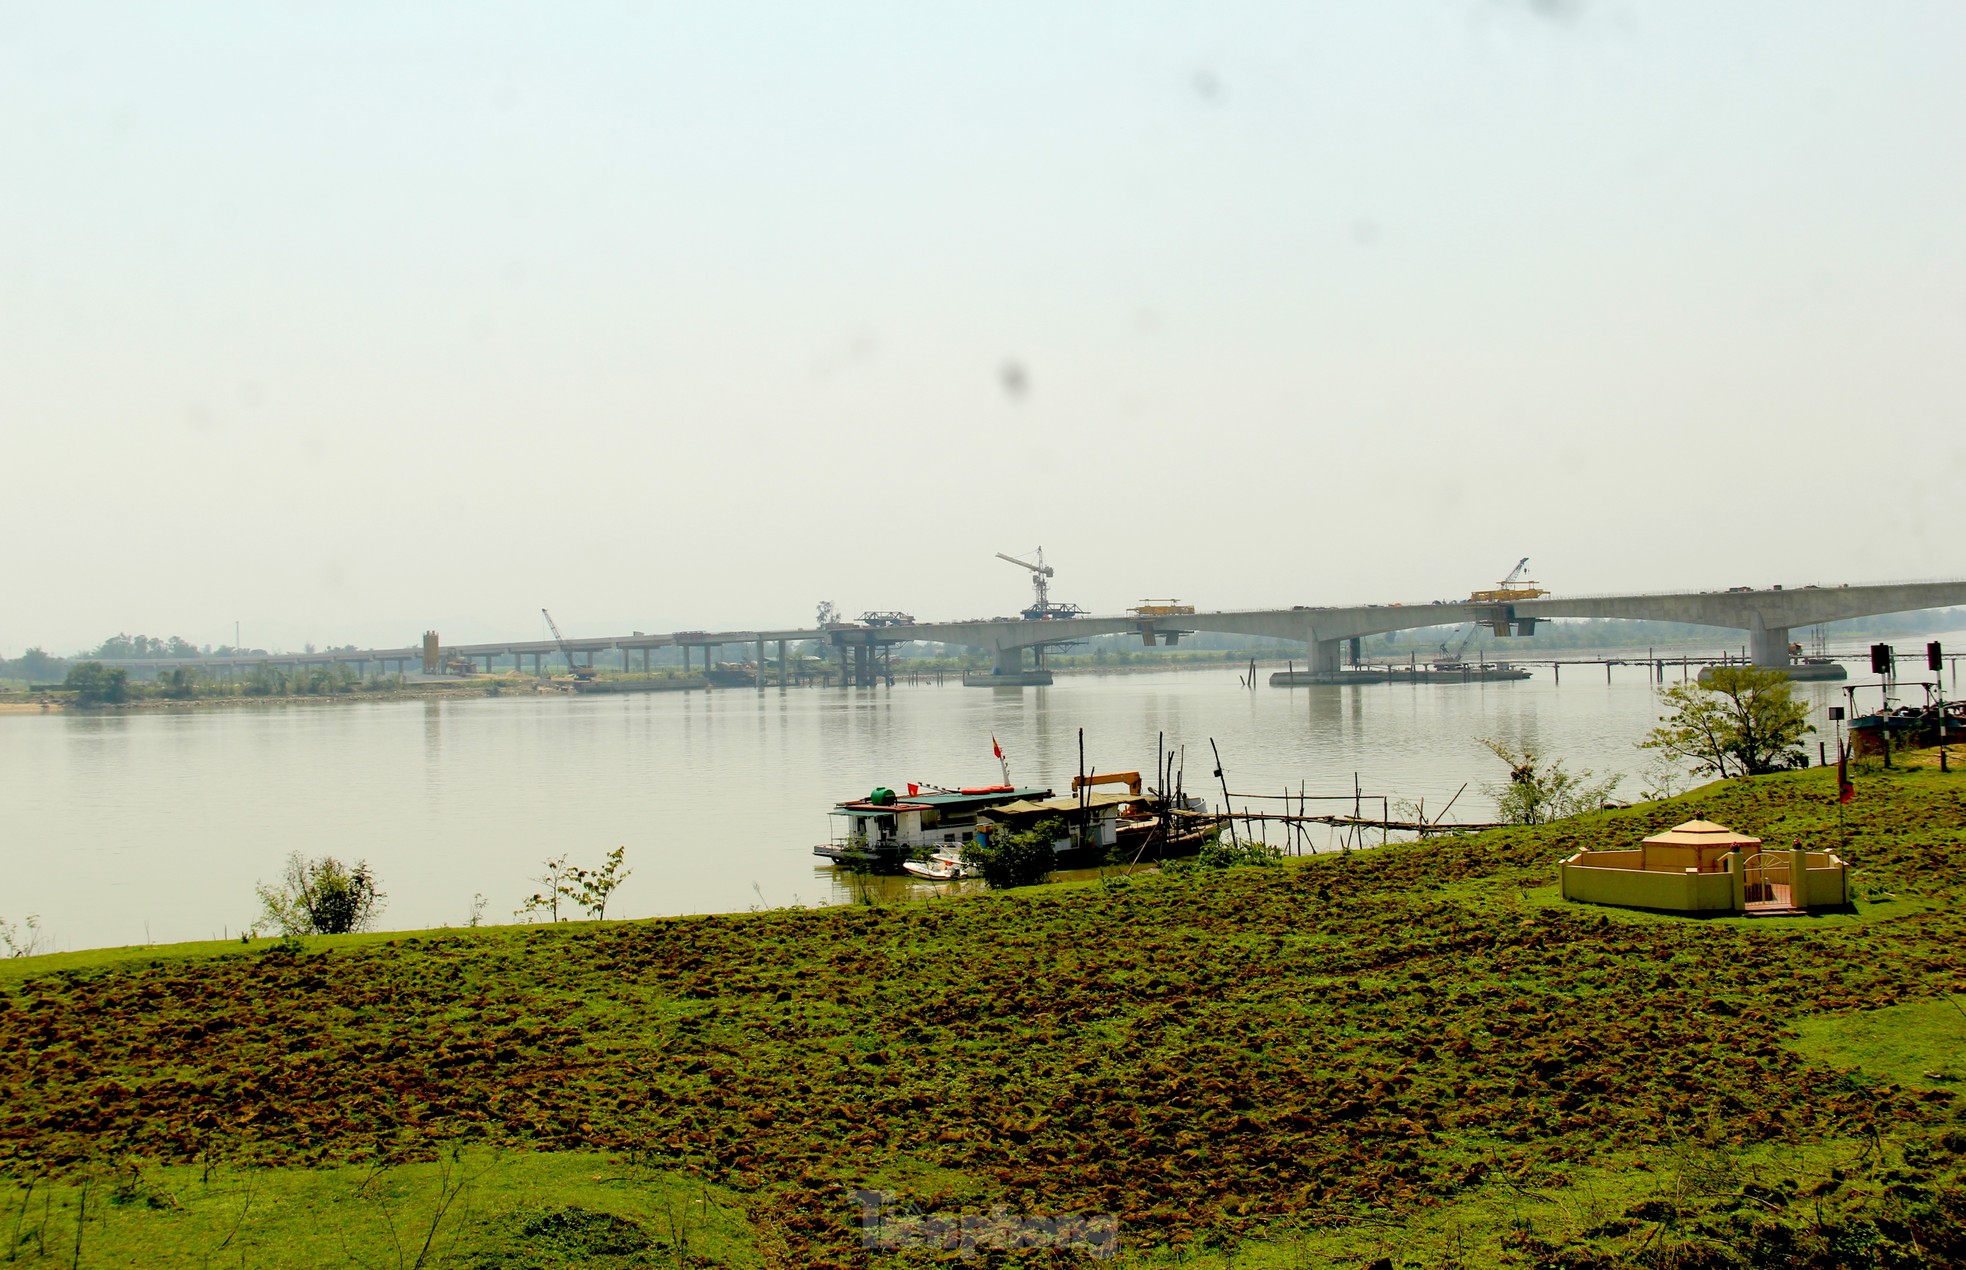 Cầu vượt sông nối 2 tỉnh Nghệ An và Hà Tĩnh trước ngày hợp long- Ảnh 18.